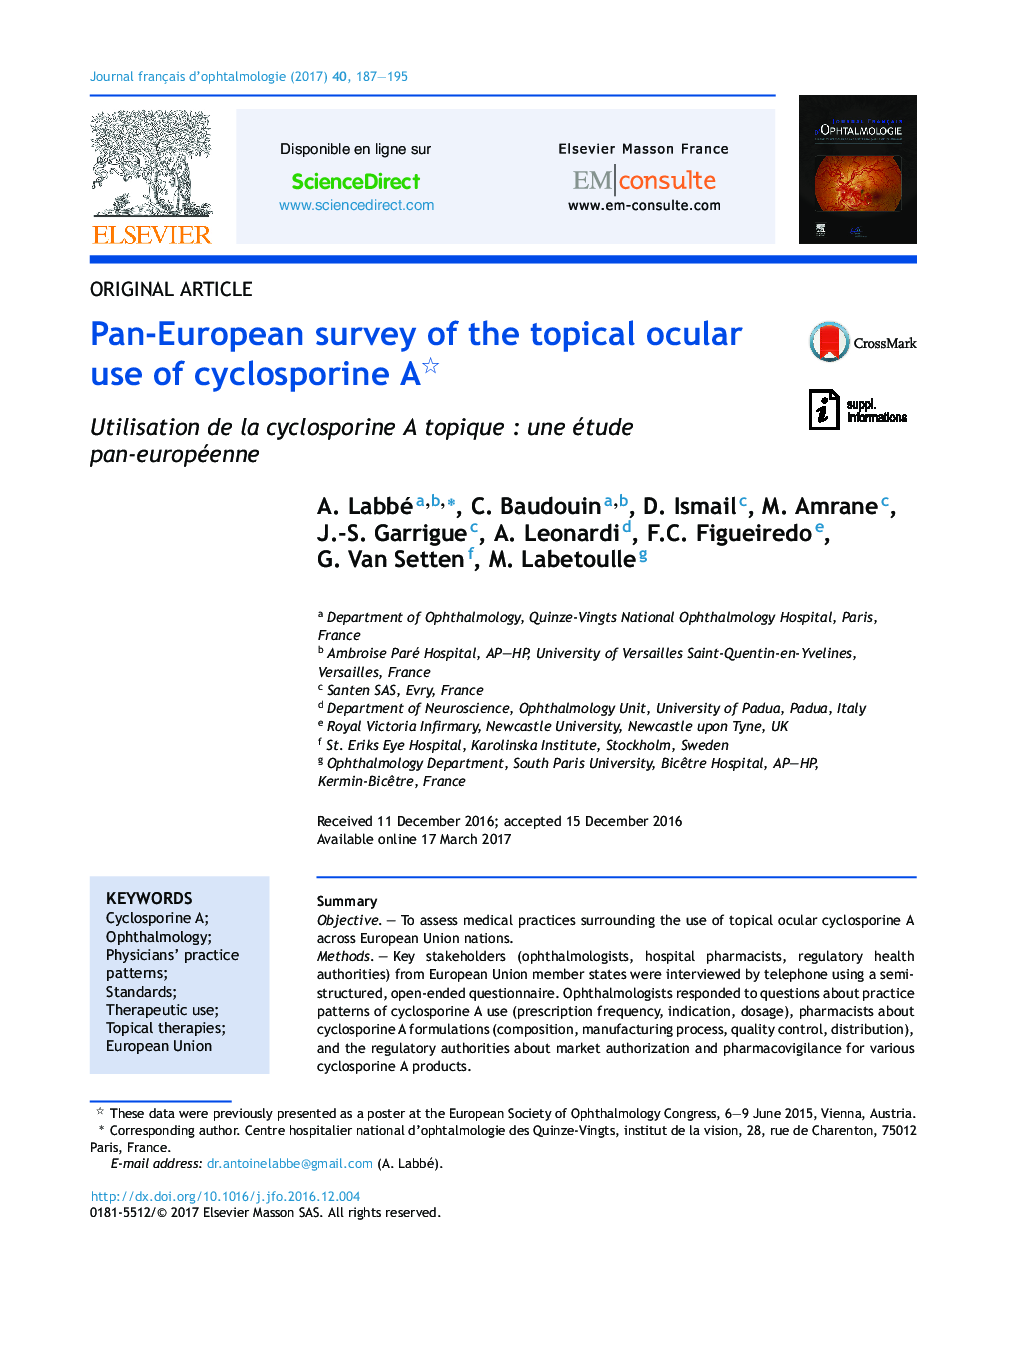 Pan-European survey of the topical ocular use of cyclosporine A